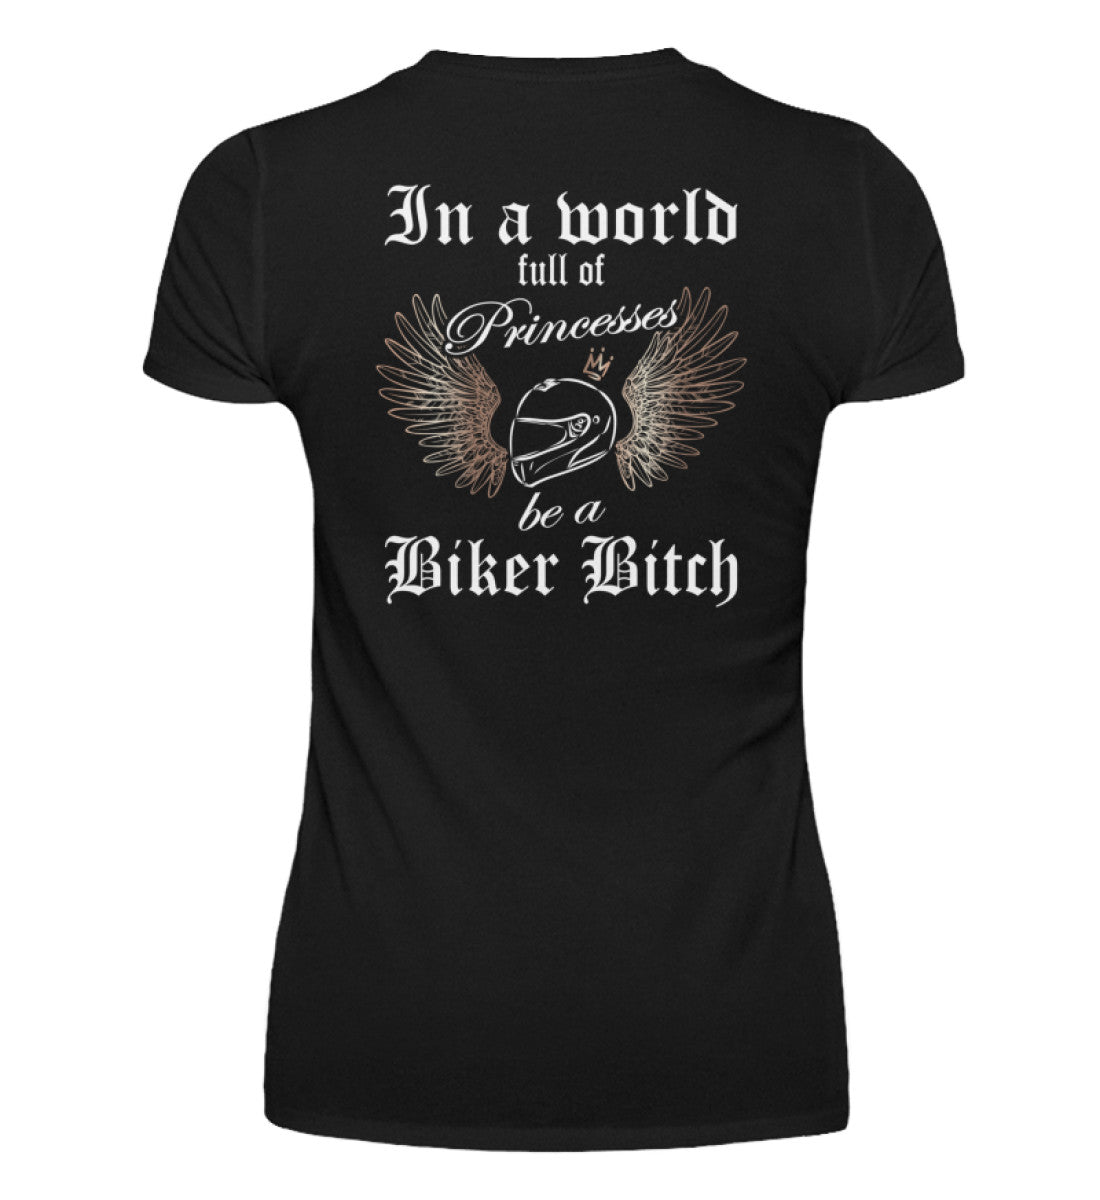 Ein Bikerin T-Shirt mit V-Ausschnitt für Motorradfahrerinnen von Wingbikers mit dem Aufdruck, In a world full of Princesses, be a Biker Bitch - mit Back Print, in schwarz.